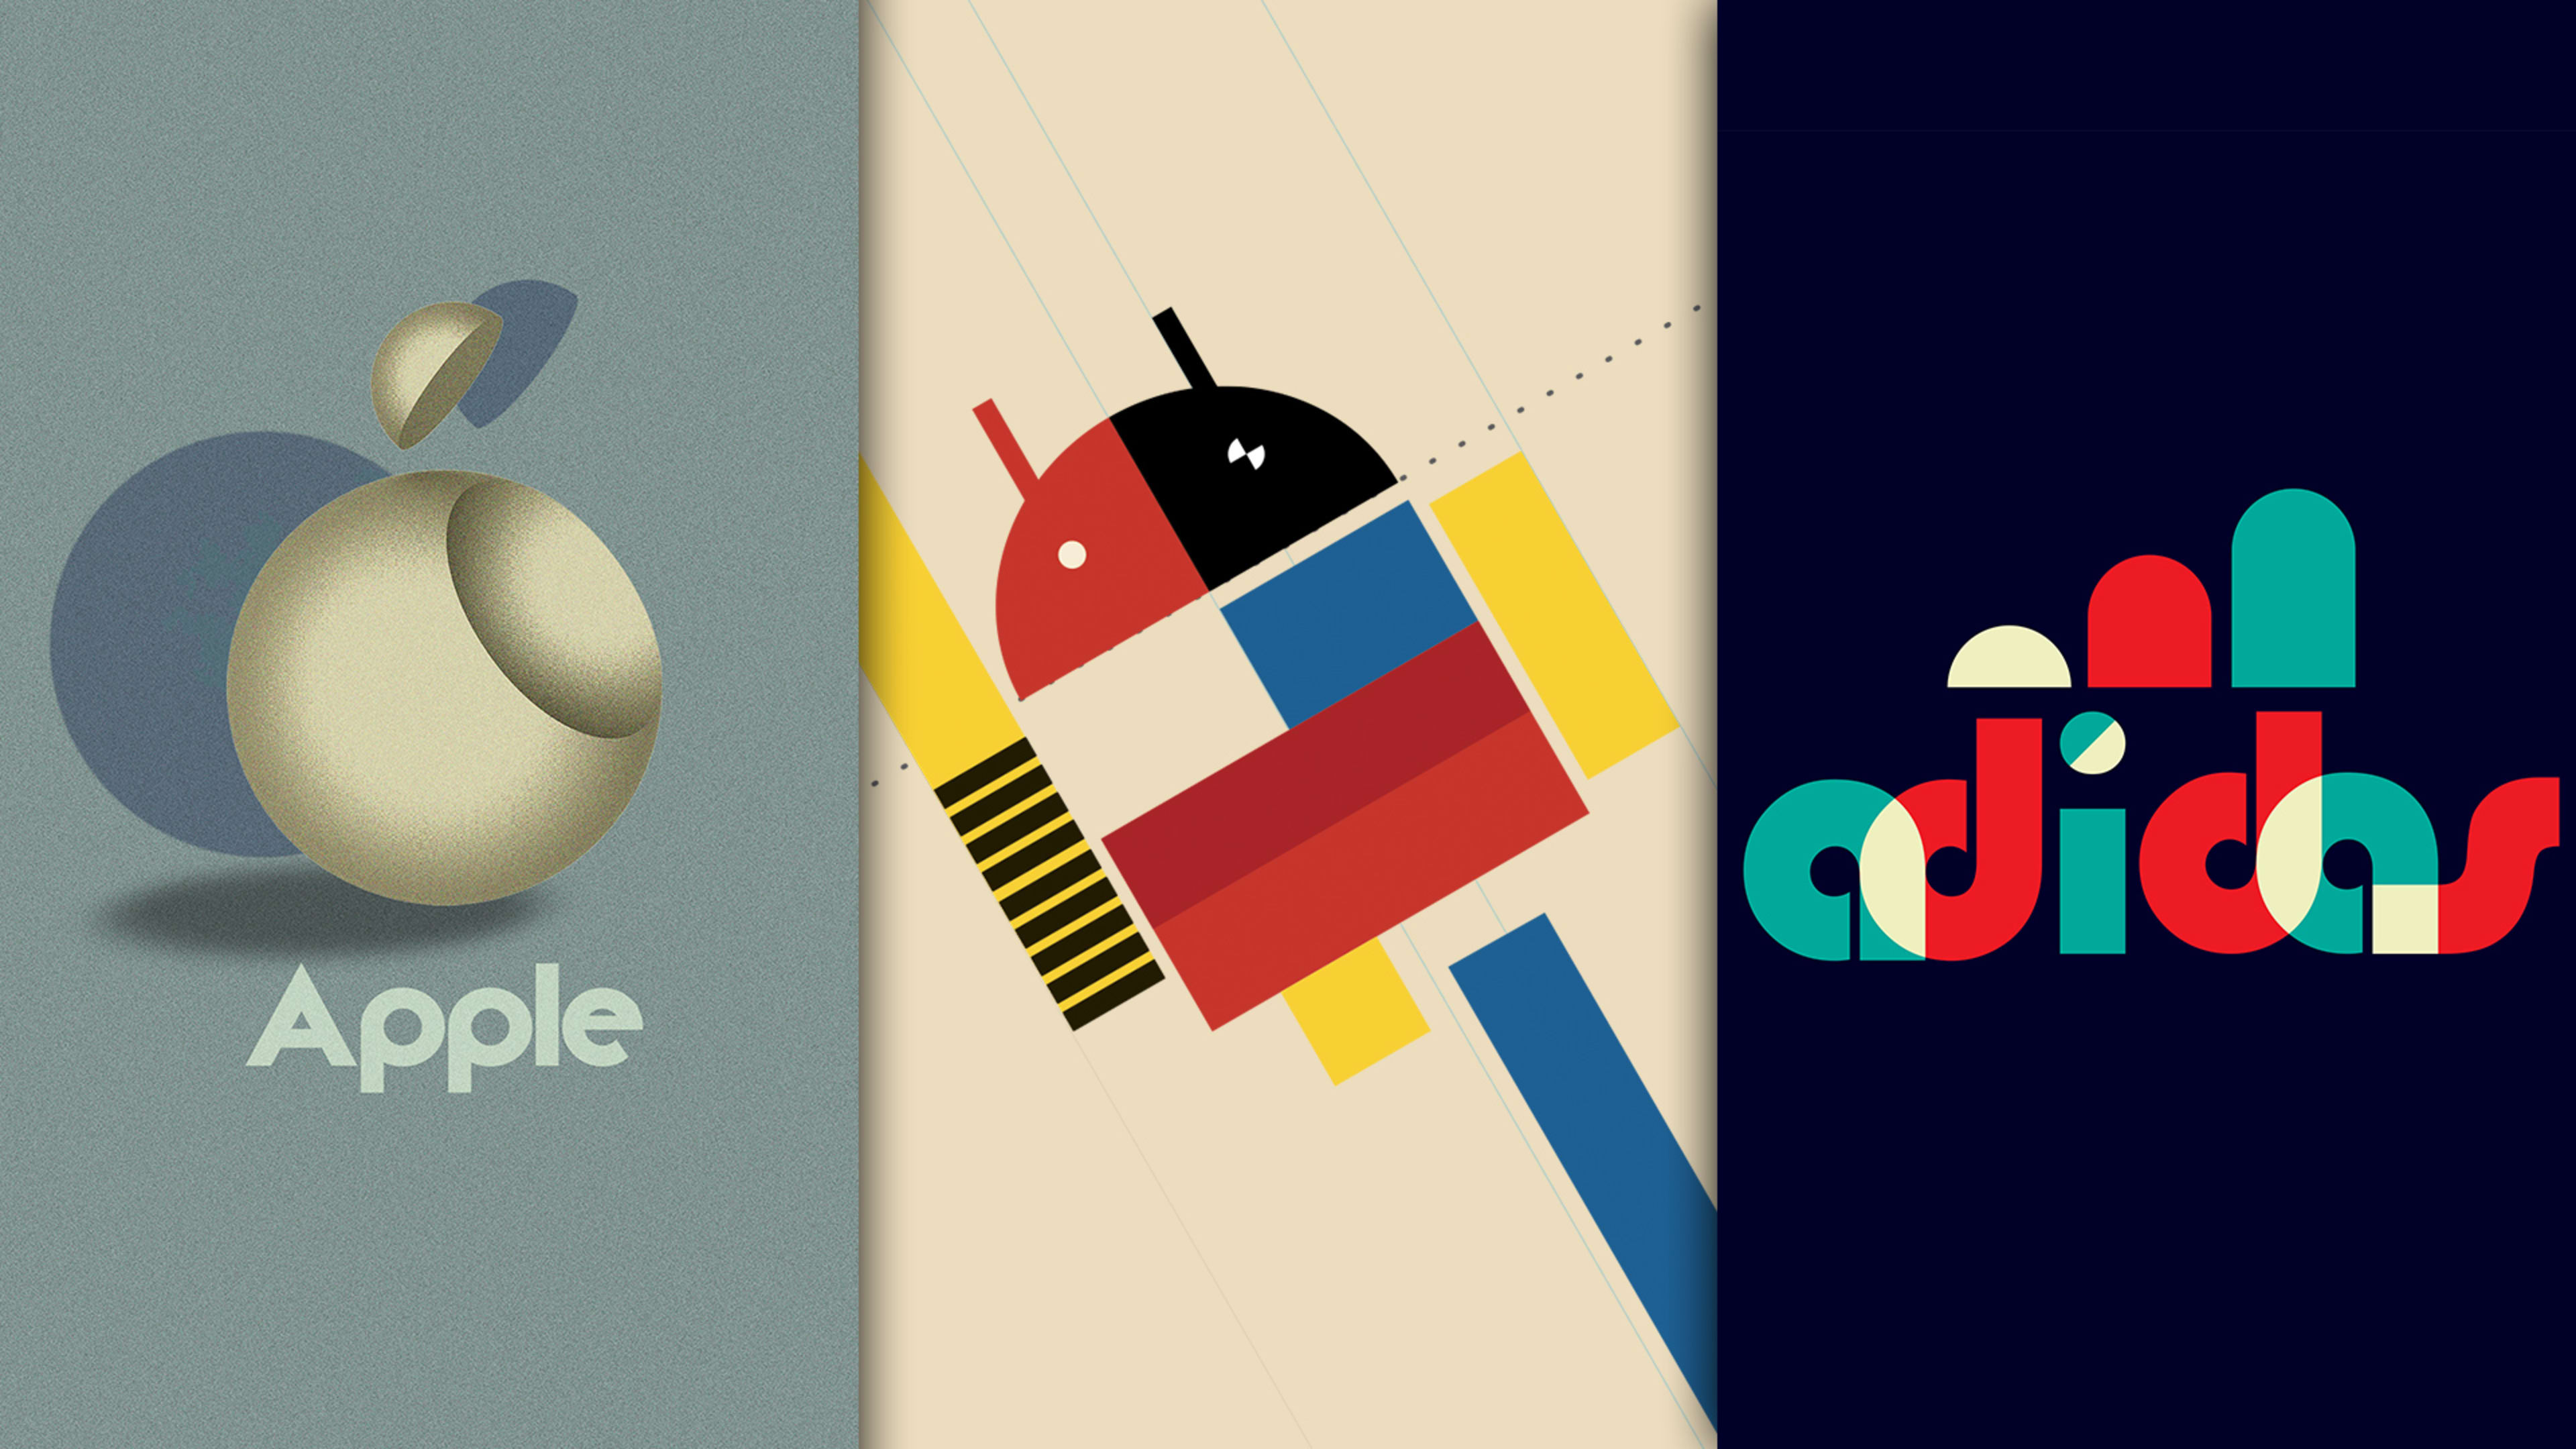 Apple, Google, and Netflix logos get a Bauhaus makeover